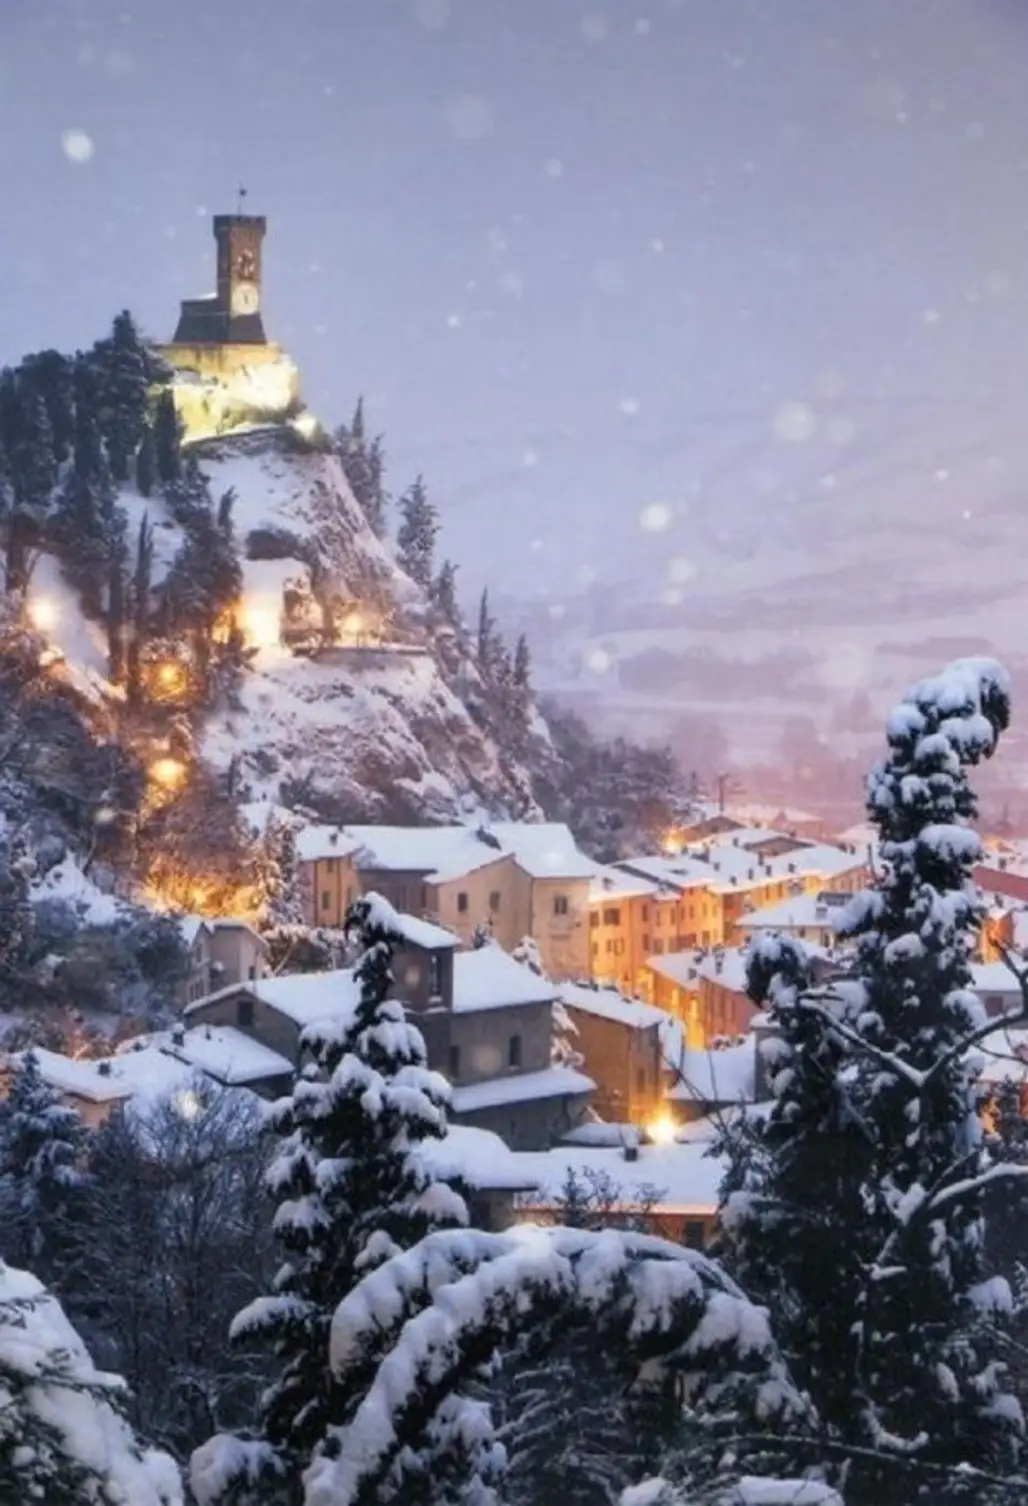 Snowy Night in Brisighella, Italy